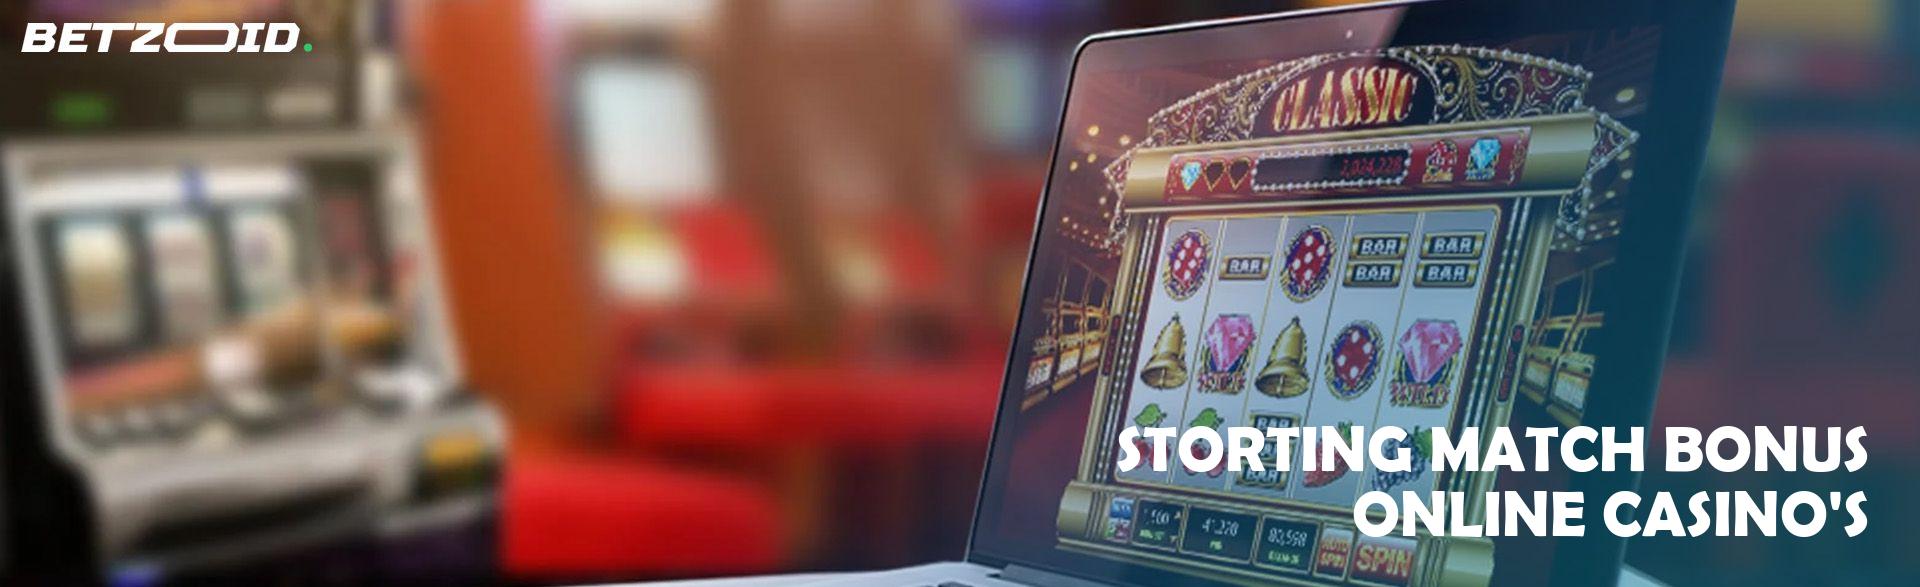 Storting Match Bonus Online Casino'